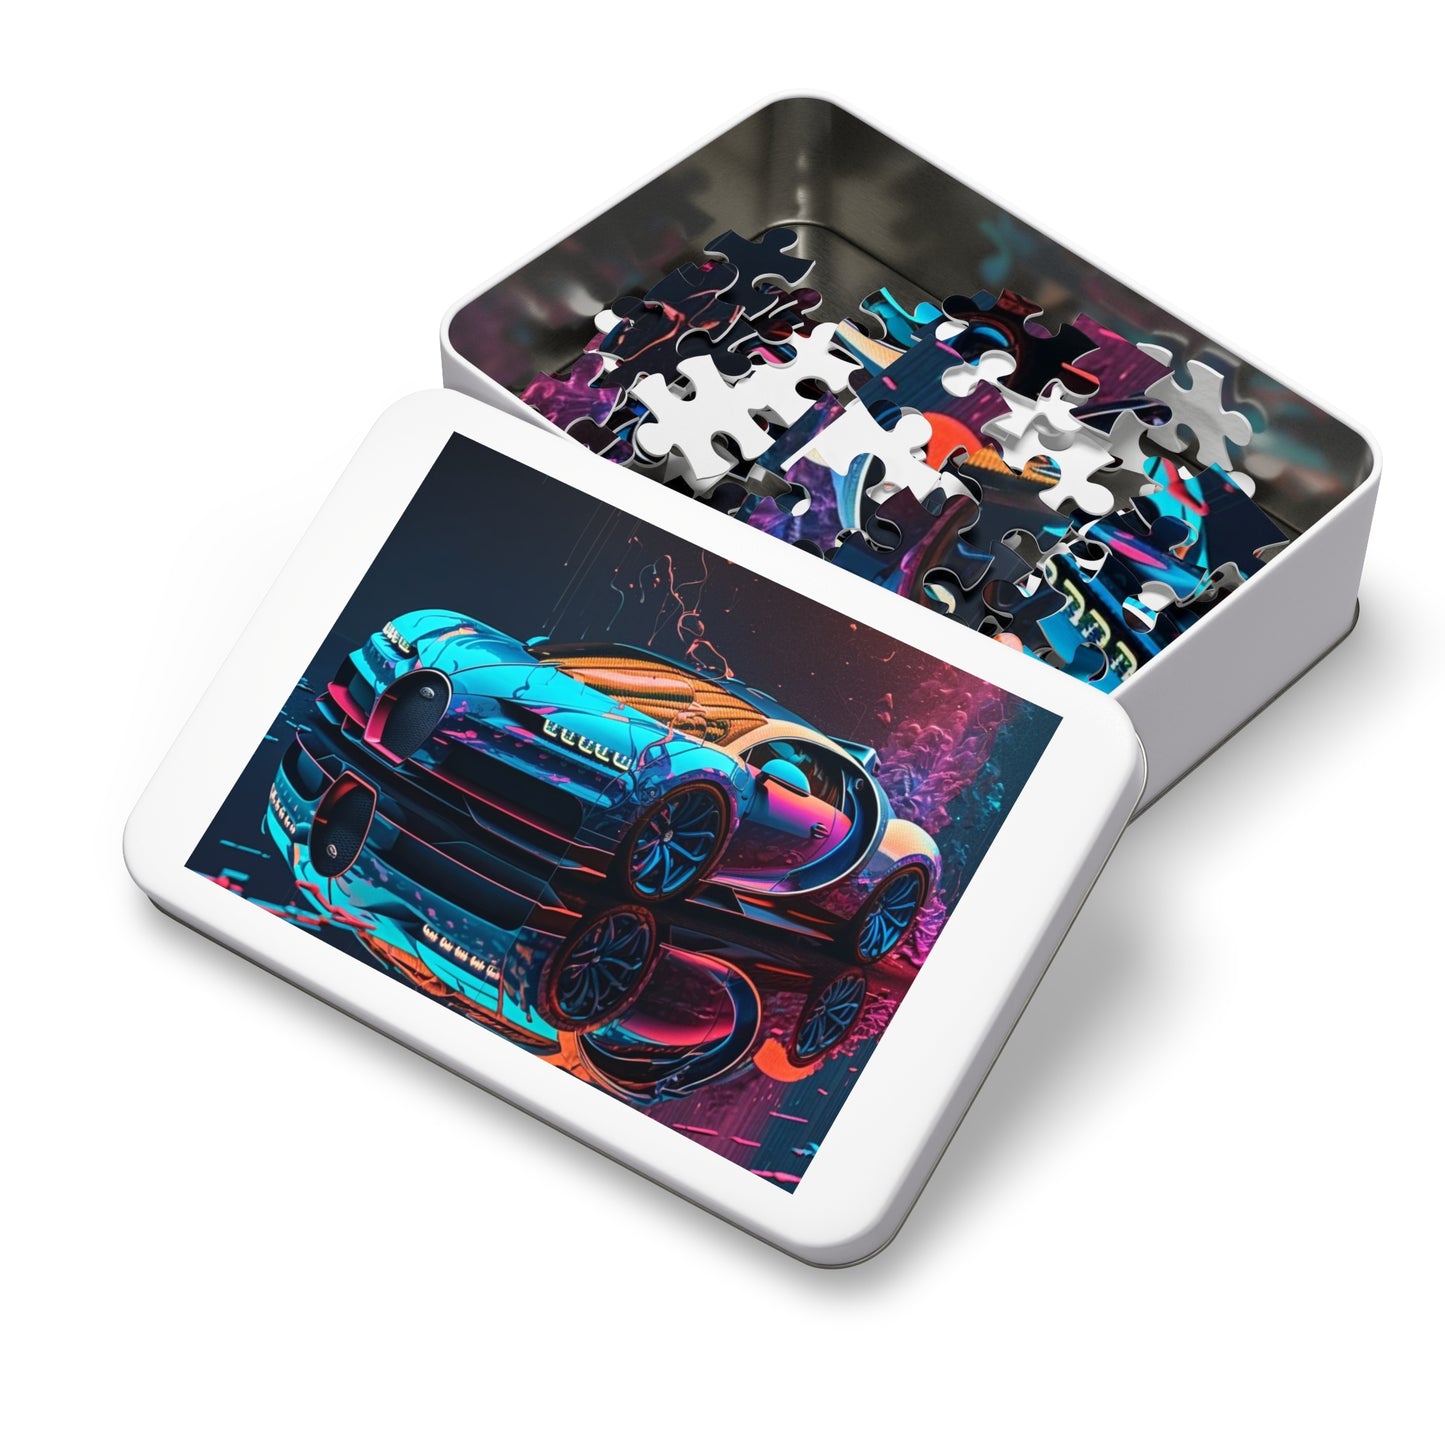 Jigsaw Puzzle (30, 110, 252, 500,1000-Piece) Bugatti Neon Chiron 4